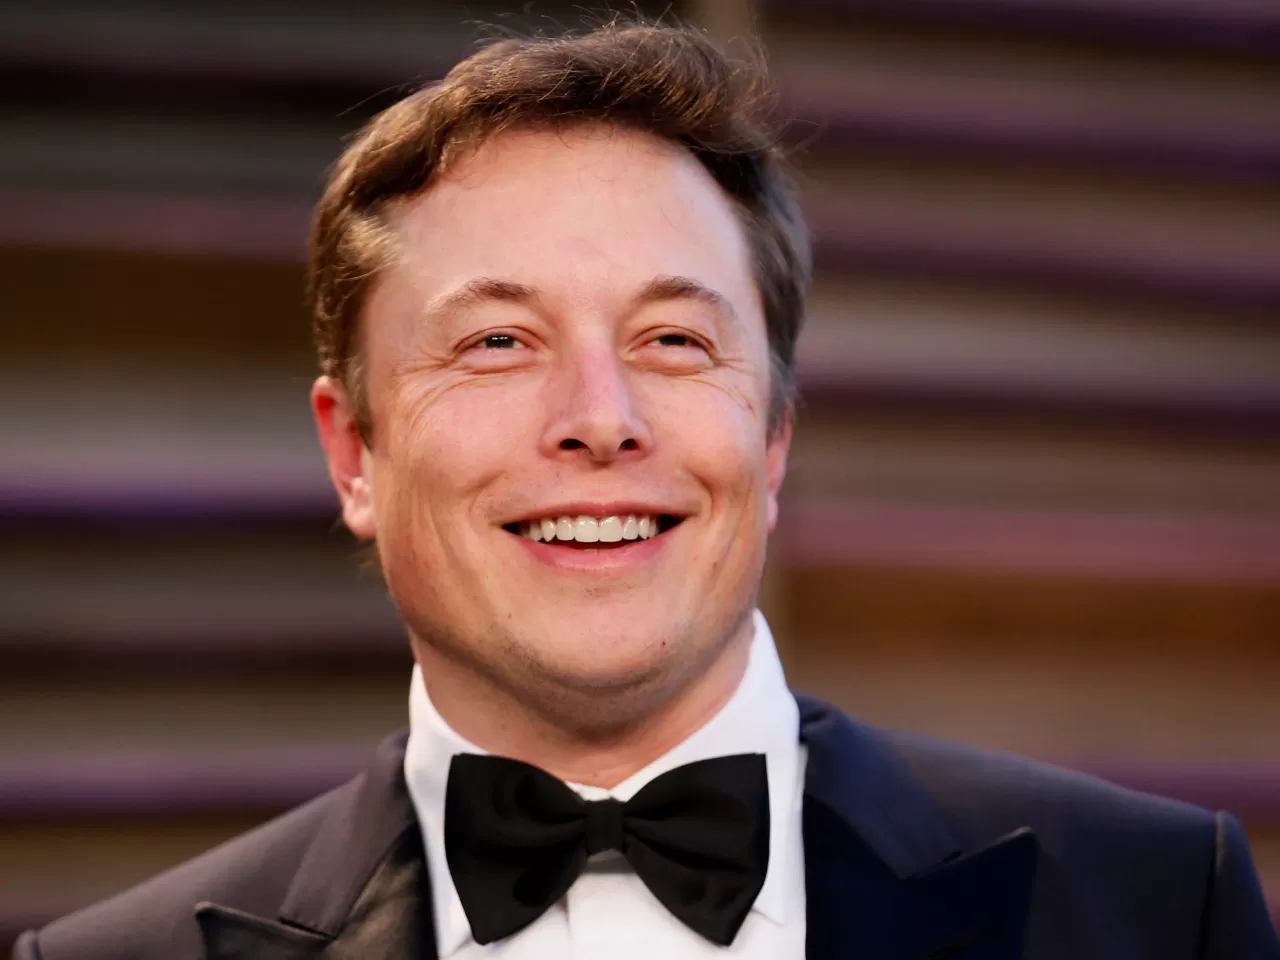 Elon Musk Kimdir? Bilinmeyen 10 Yönüyle Elon Musk!